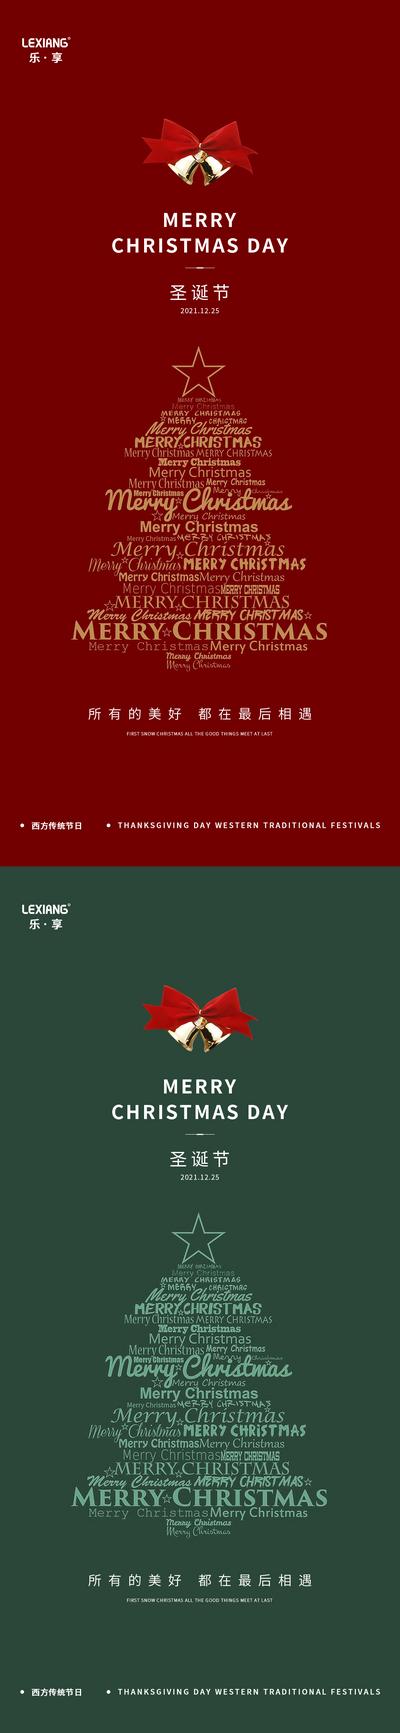 【南门网】海报 公历节日 圣诞节 简洁 圣诞树 铃铛 文字